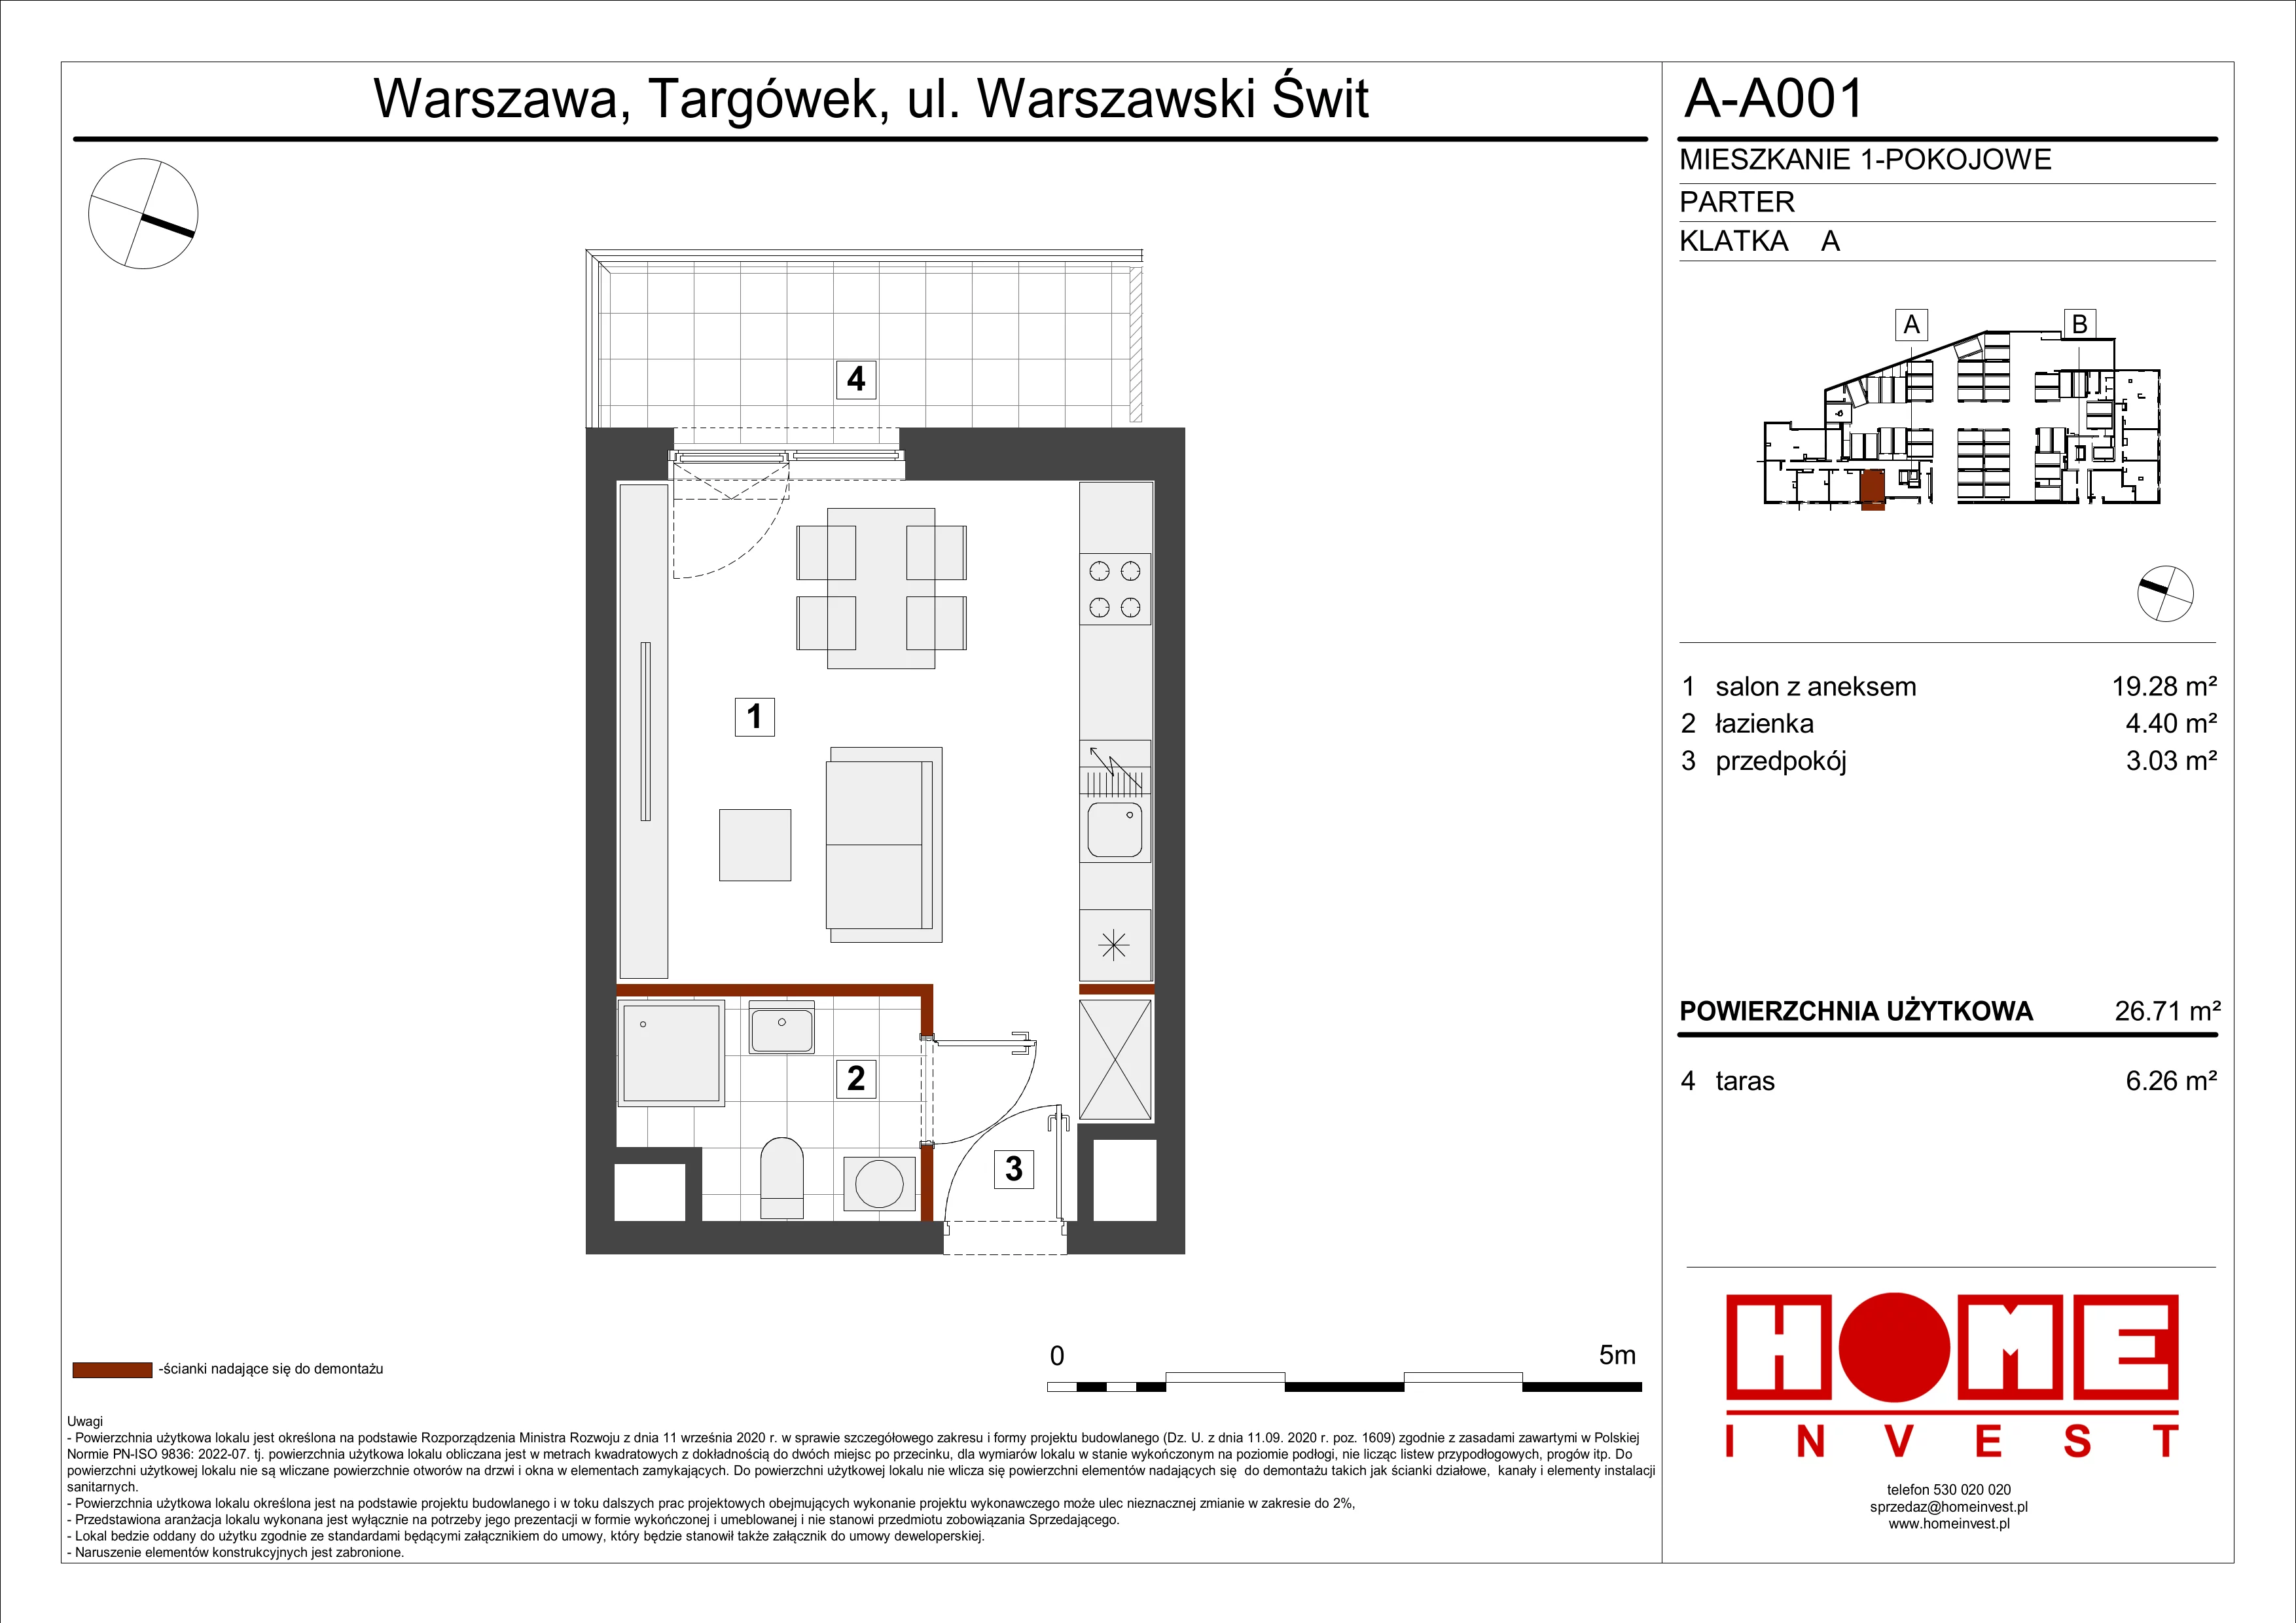 Mieszkanie 26,71 m², parter, oferta nr A-A001, Warszawski Świt, Warszawa, Targówek, Bródno, ul. Warszawski Świt 5